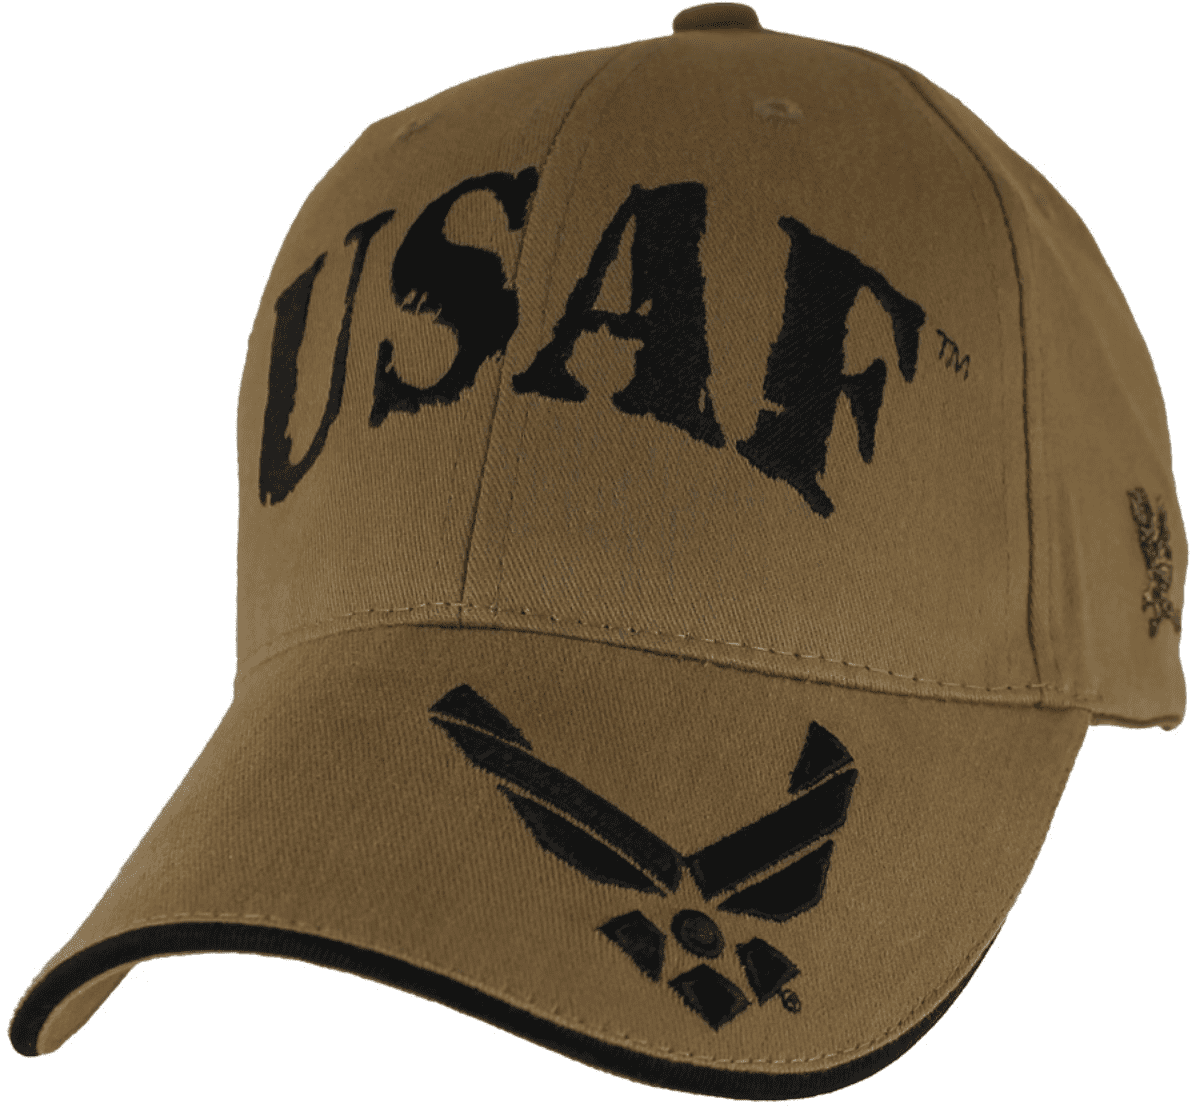 MilitaryBest U.S Air Force Hap Wings Veteran Mesh Back Cap